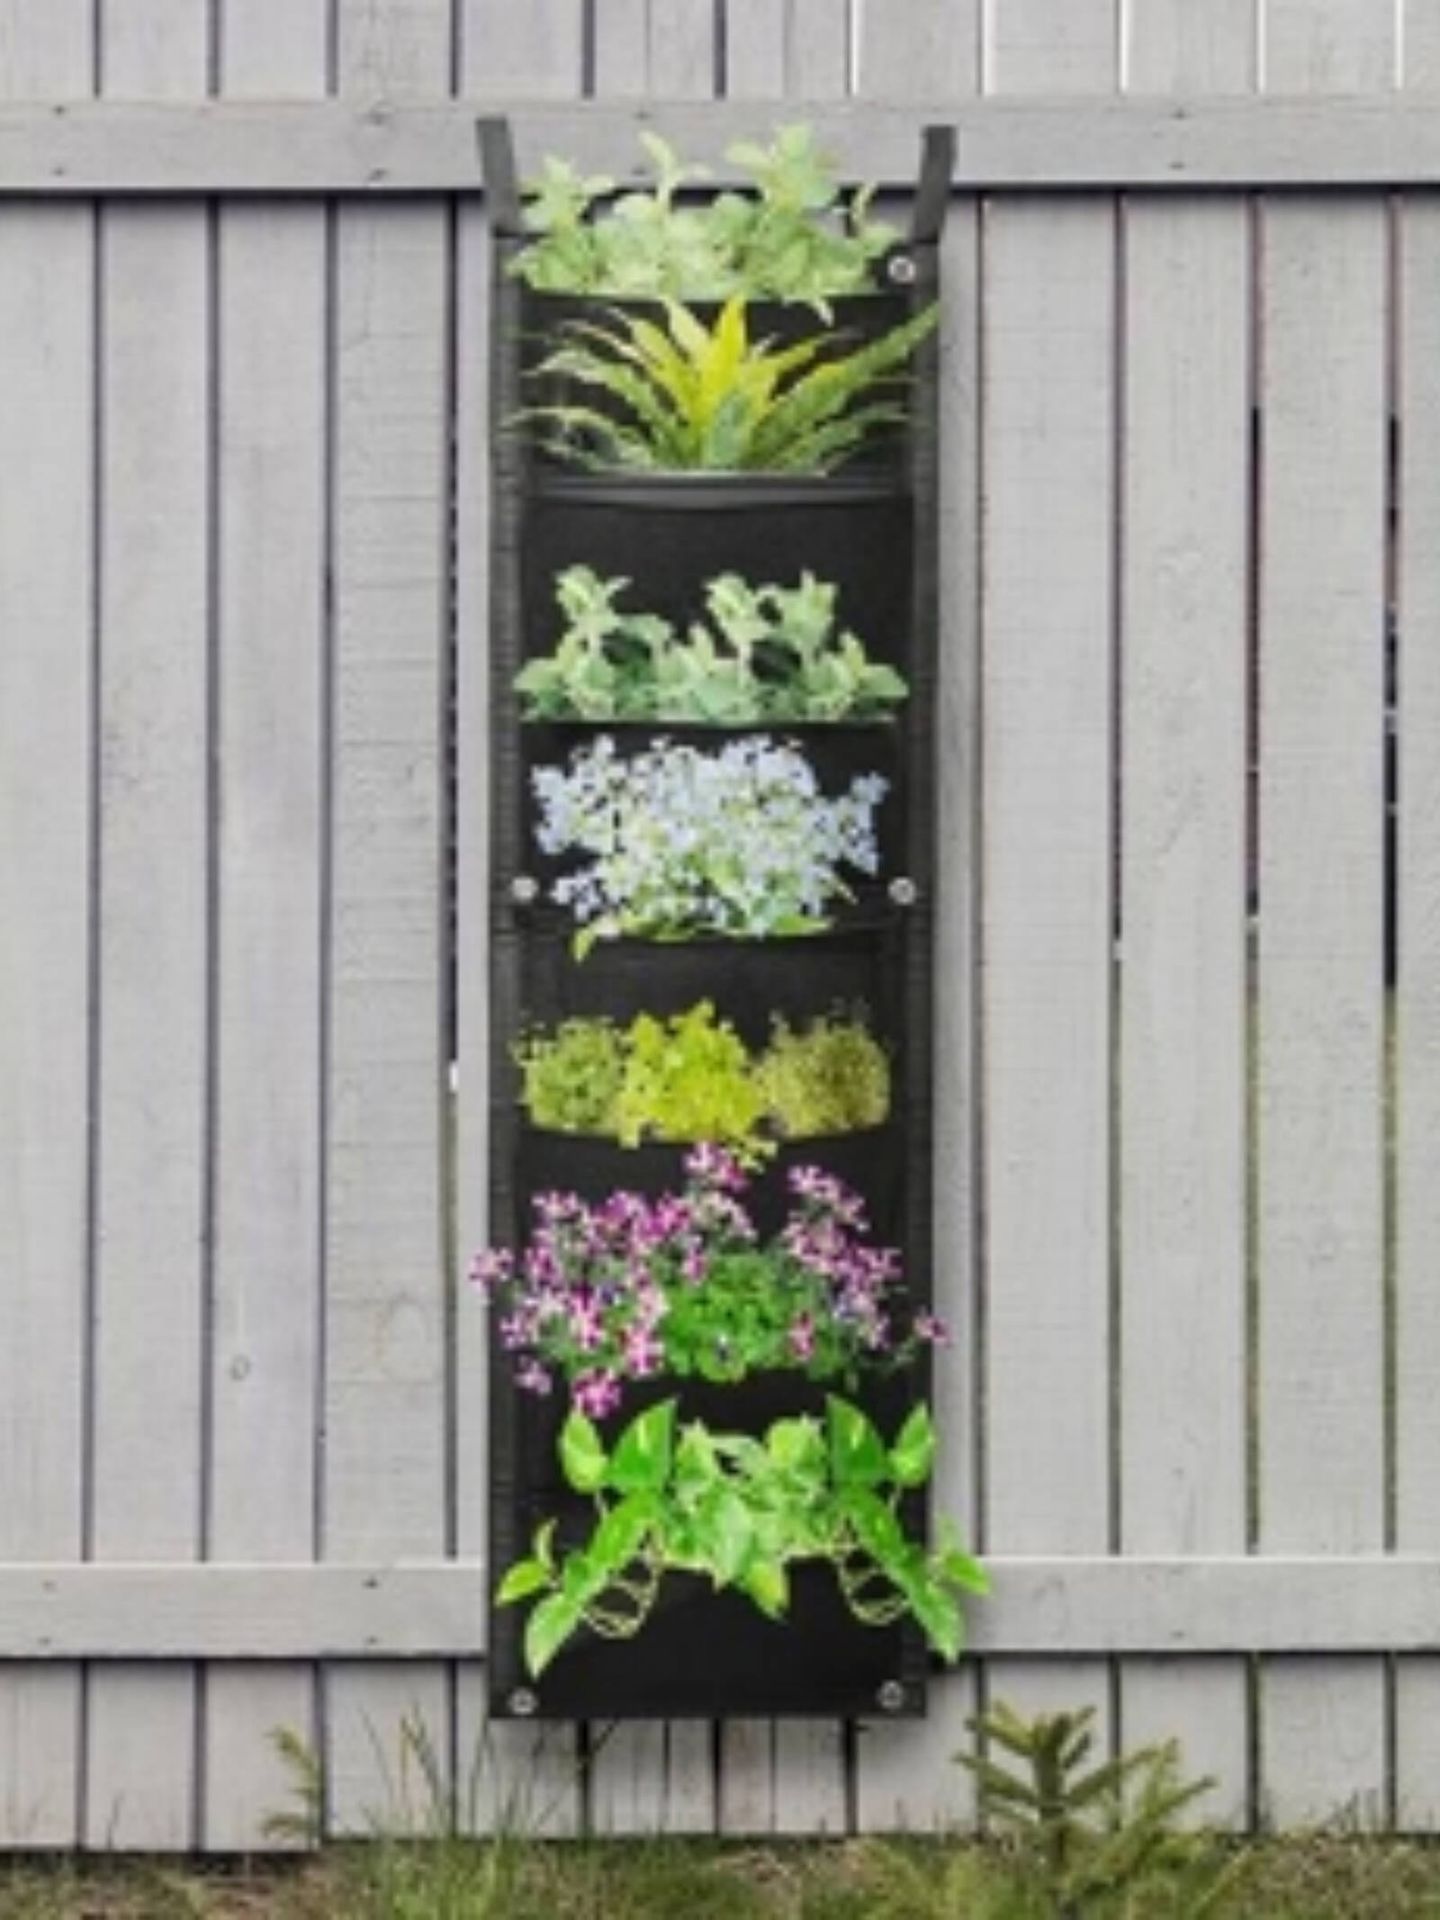 Trucos e inspiración para decorar con plantas. (Cortesía/Carrefour)